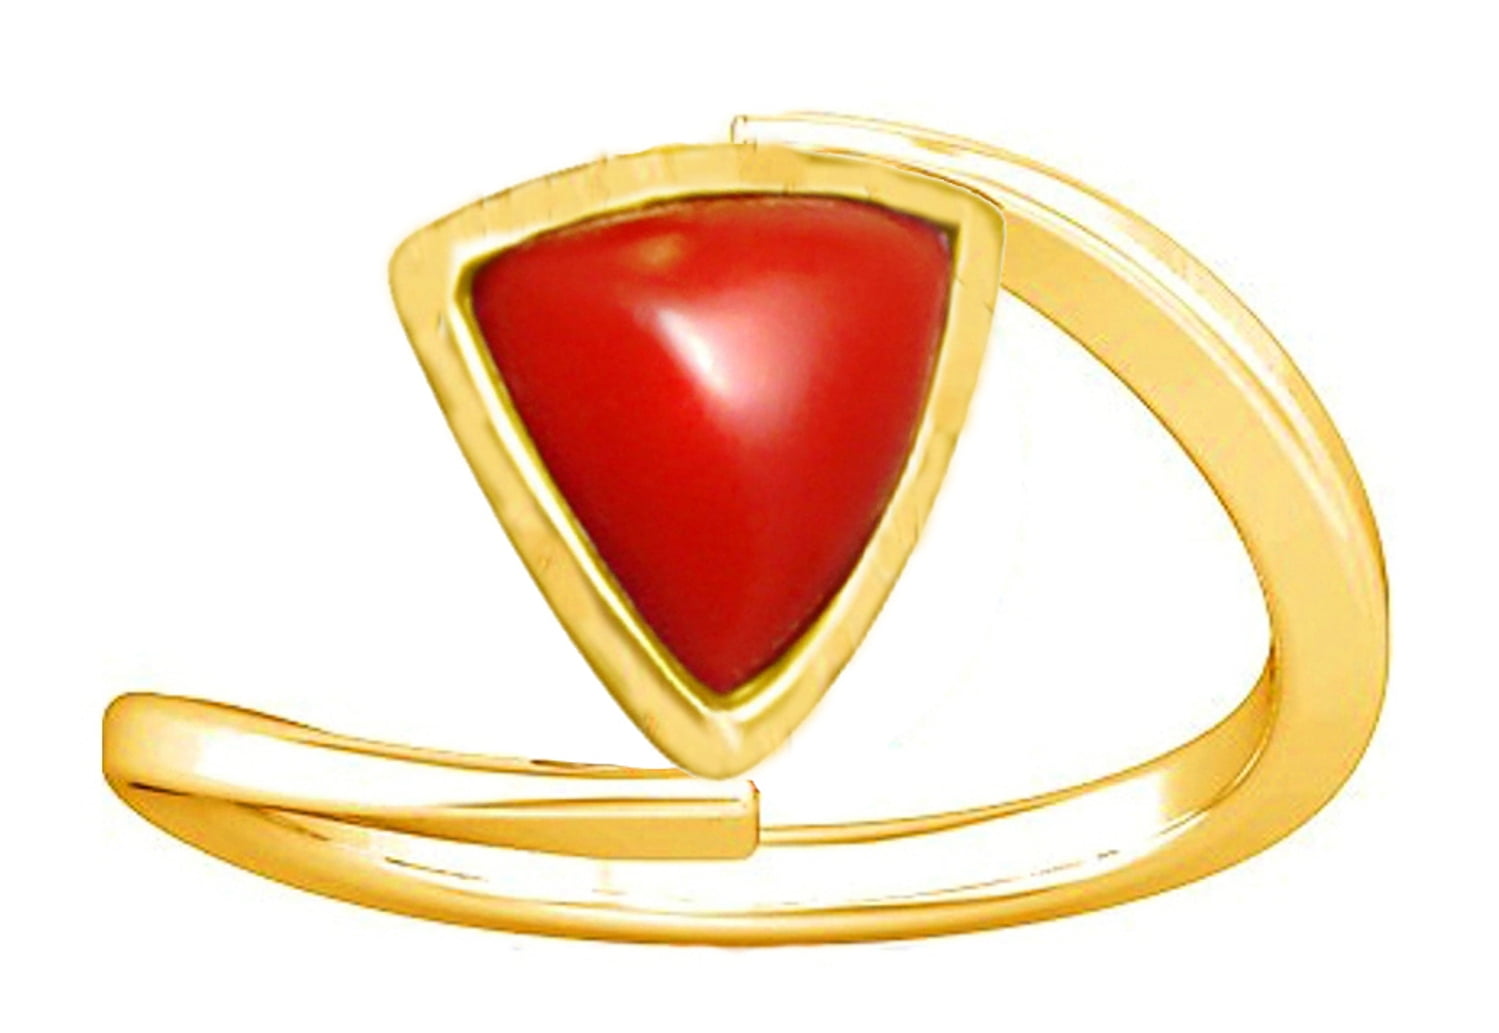 Buy Divya Shakti12.25-12.50 Carat Yellow Sapphire Pukhraj Gemstone Panchdhatu  Ring for Women Online at desertcartIsrael